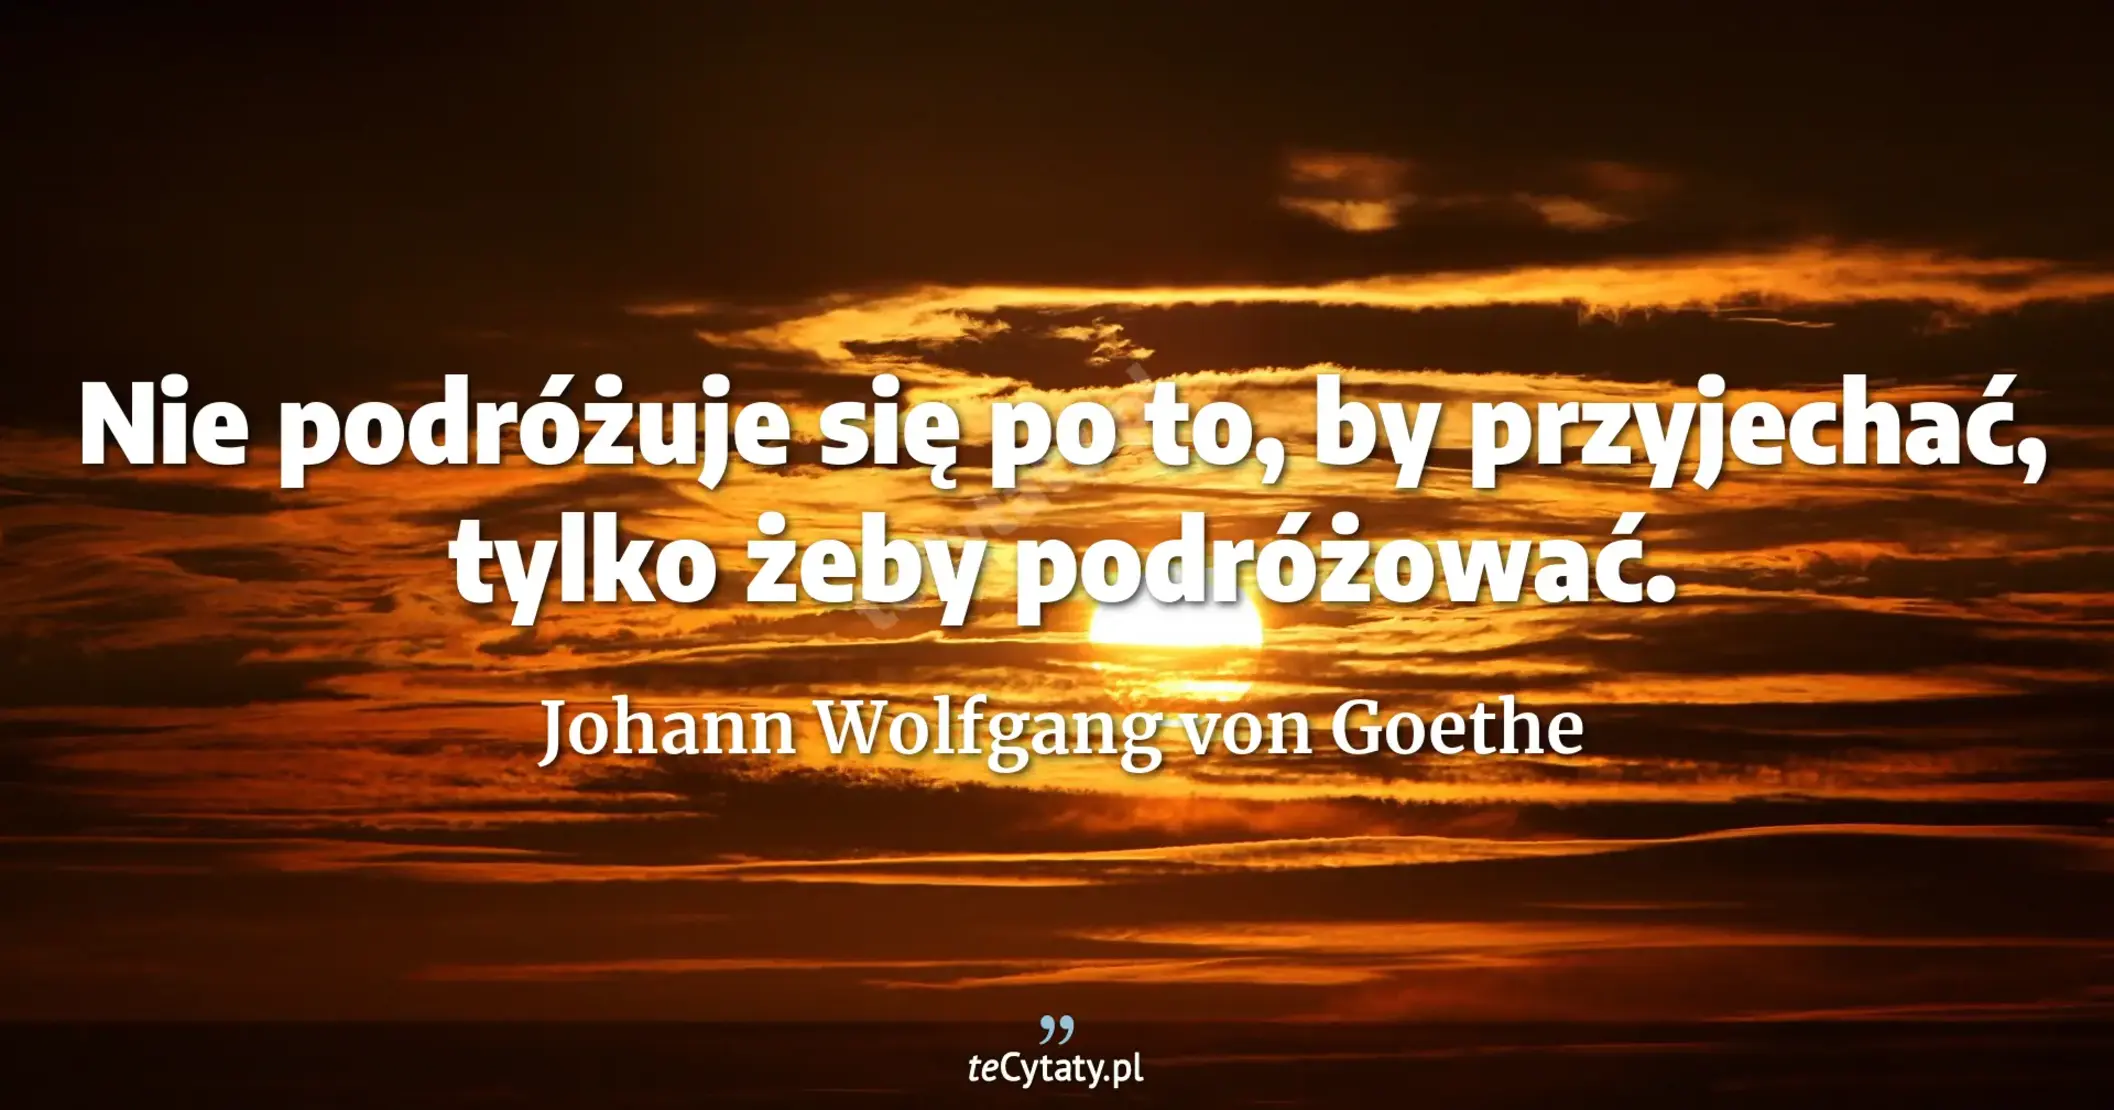 Nie podróżuje się po to, by przyjechać, tylko żeby podróżować. - Johann Wolfgang von Goethe